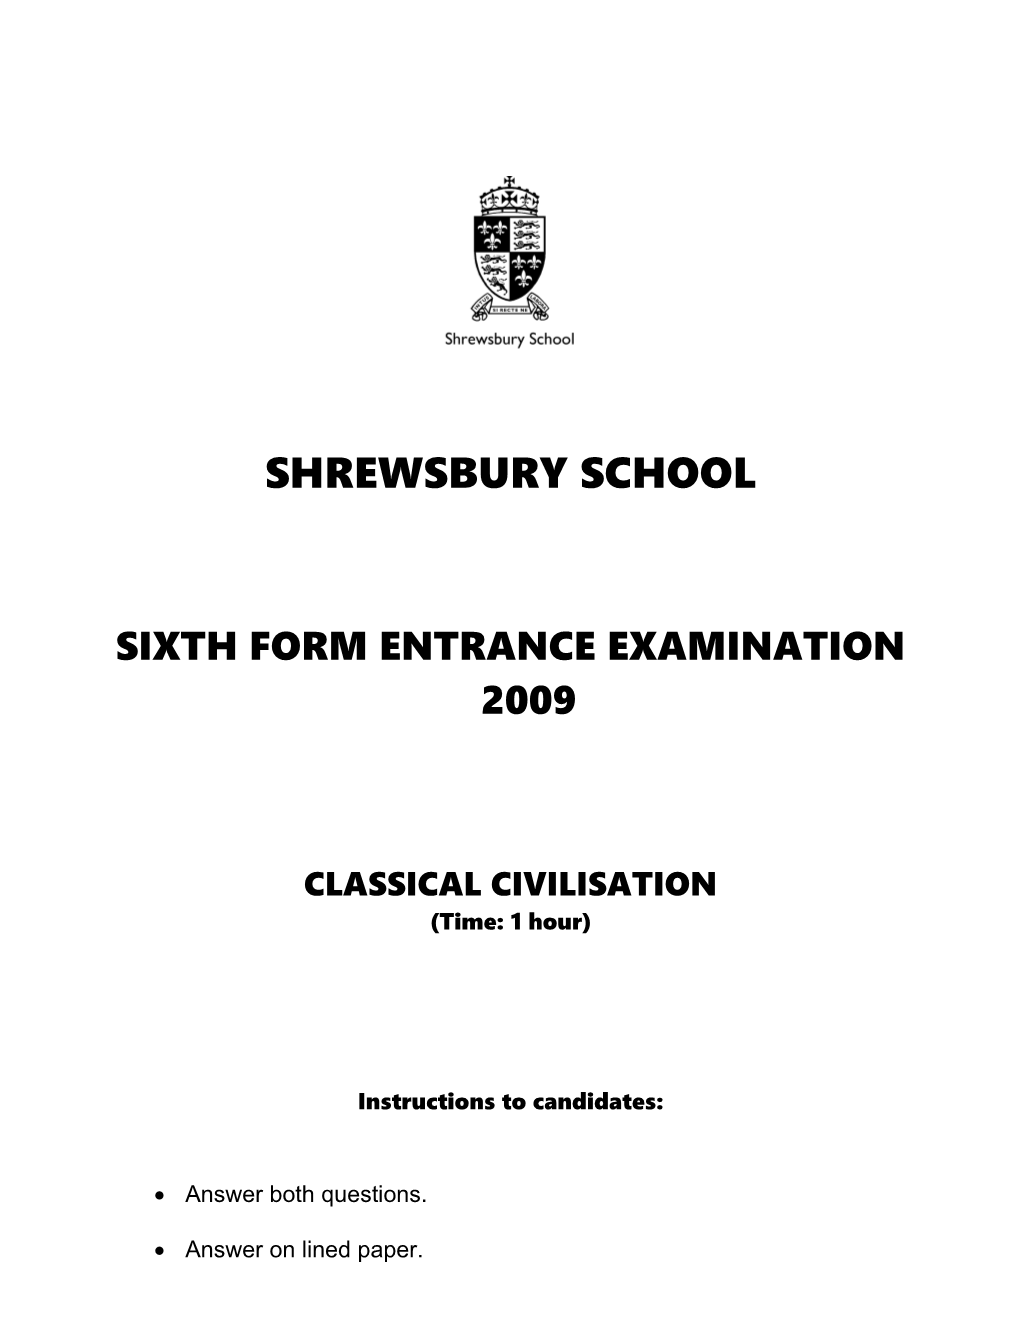 Sixth Form Entrance Examination 2009